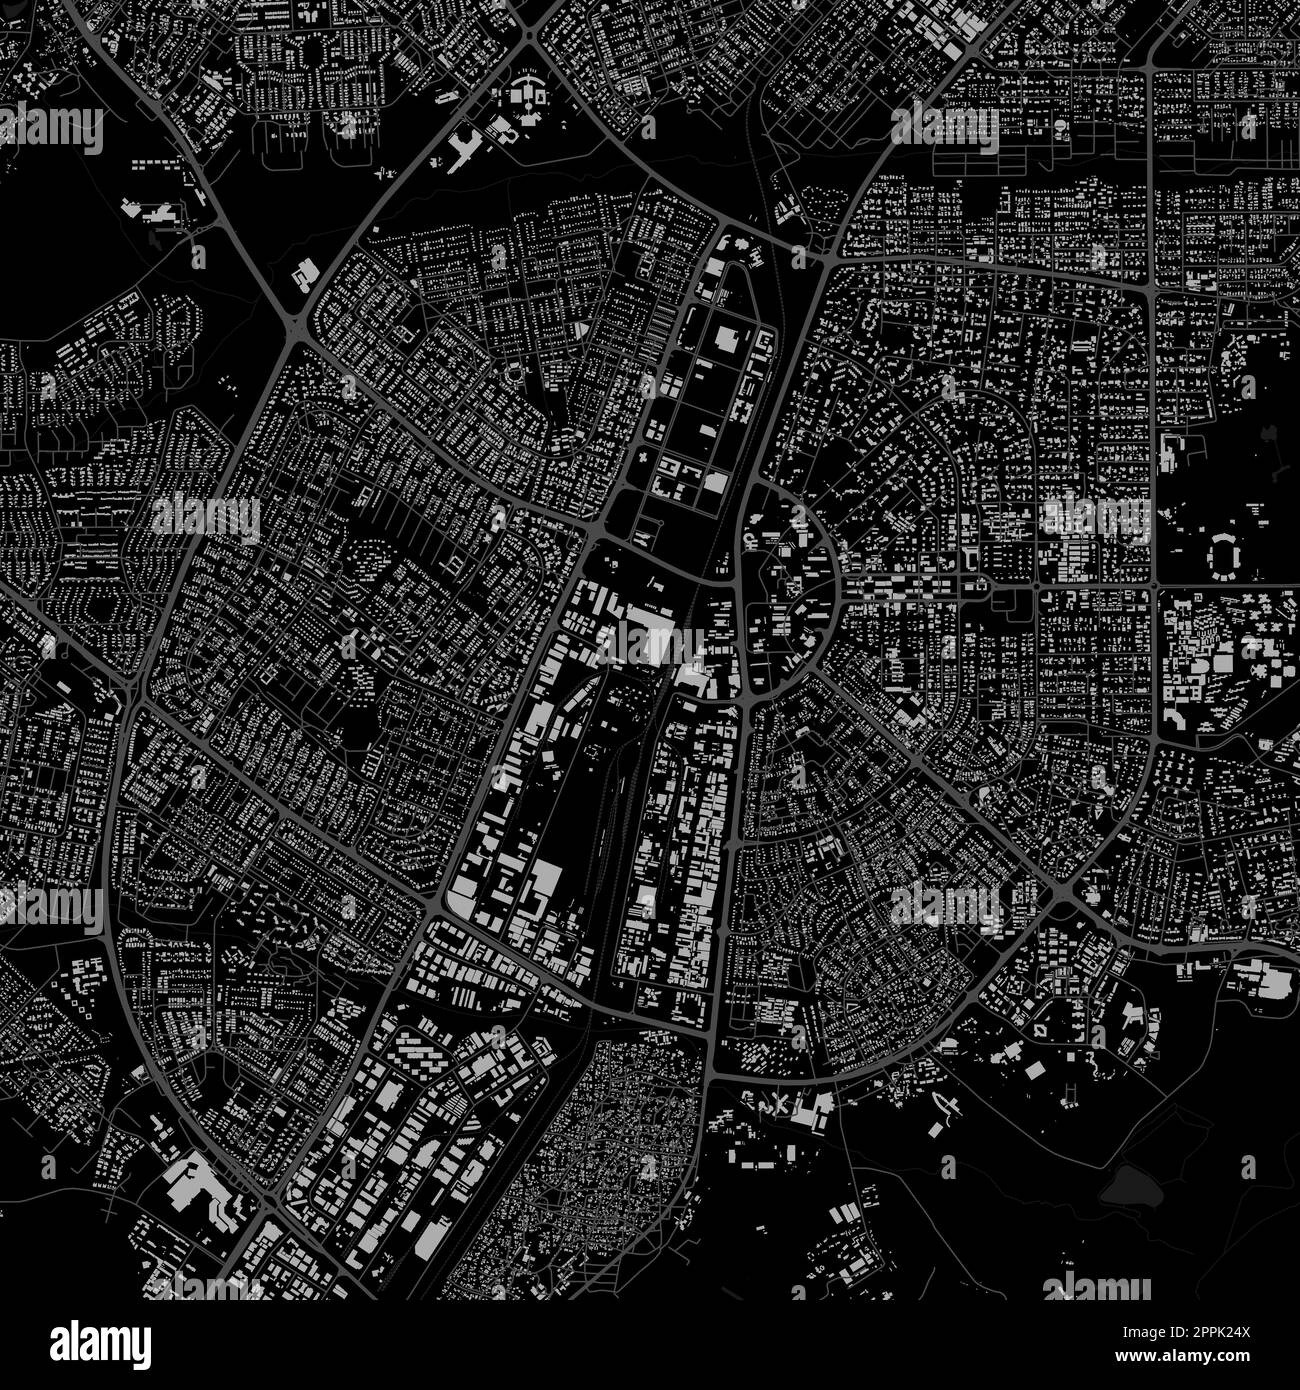 Plan de la ville de Gaborone, capitale du Botswana. Carte administrative municipale en noir et blanc avec rivières et routes, parcs et chemins de fer. Illustration vectorielle Illustration de Vecteur